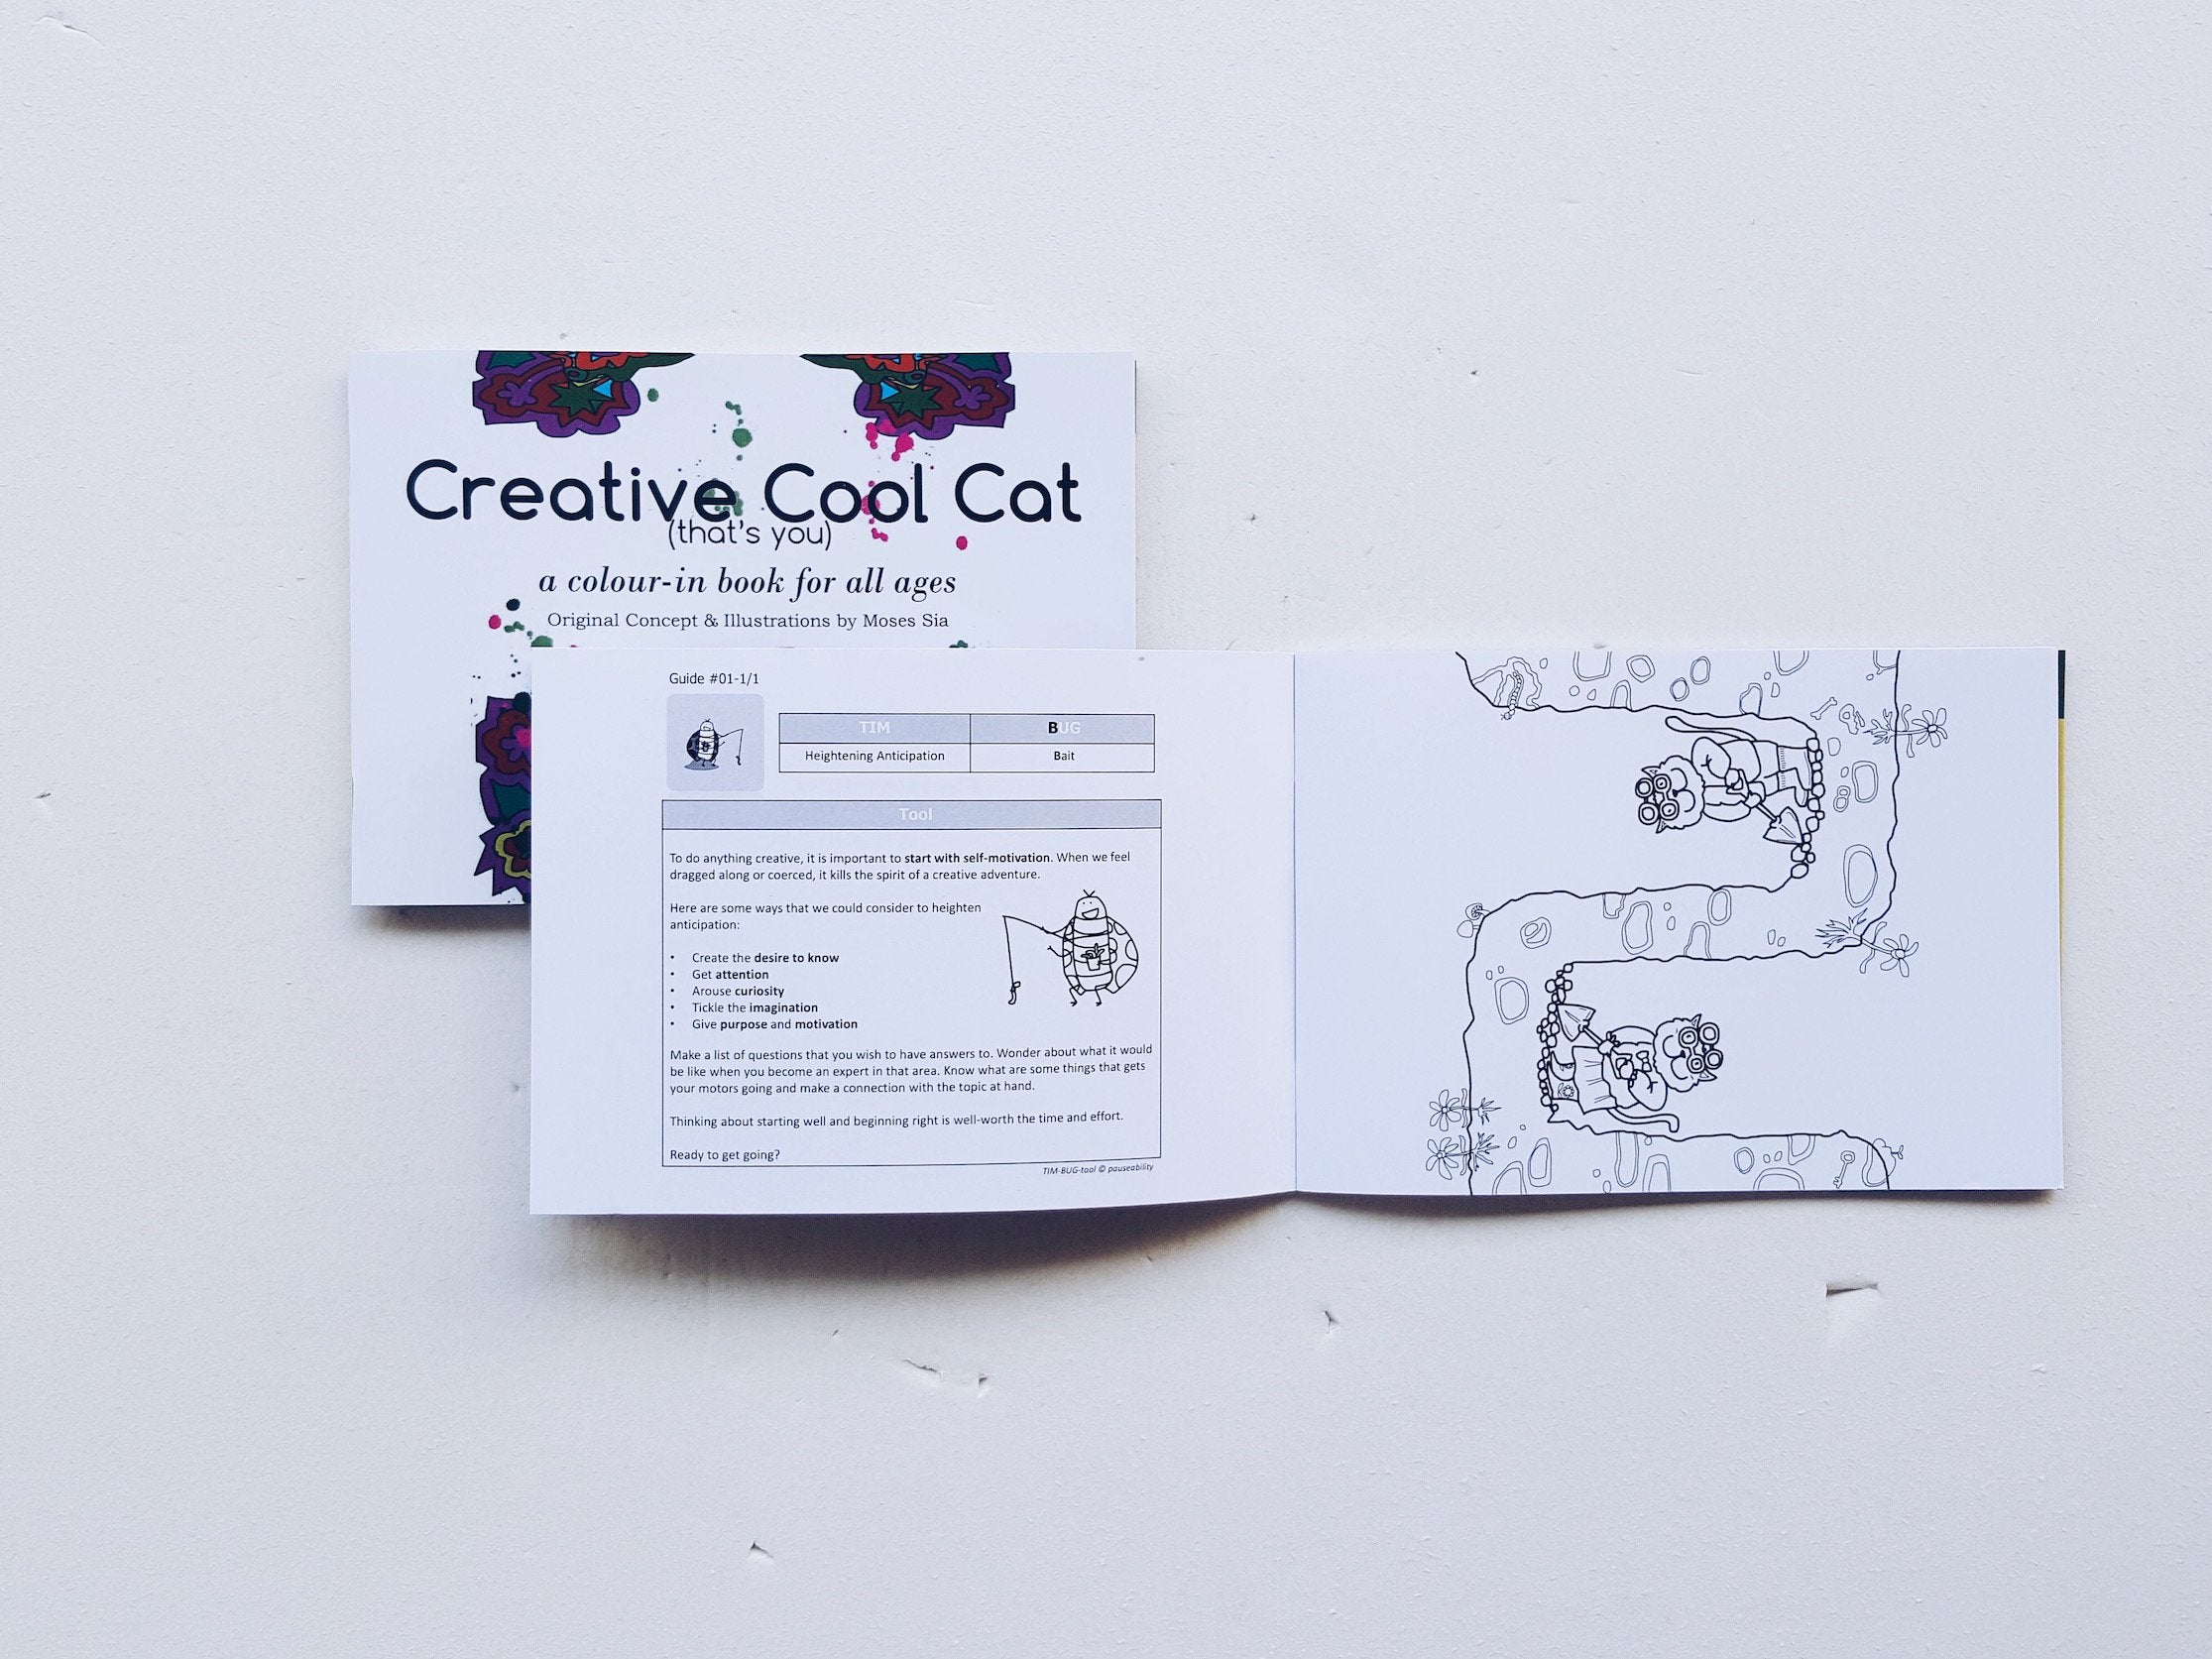 Creative Cool Cat - Localbooks.sg